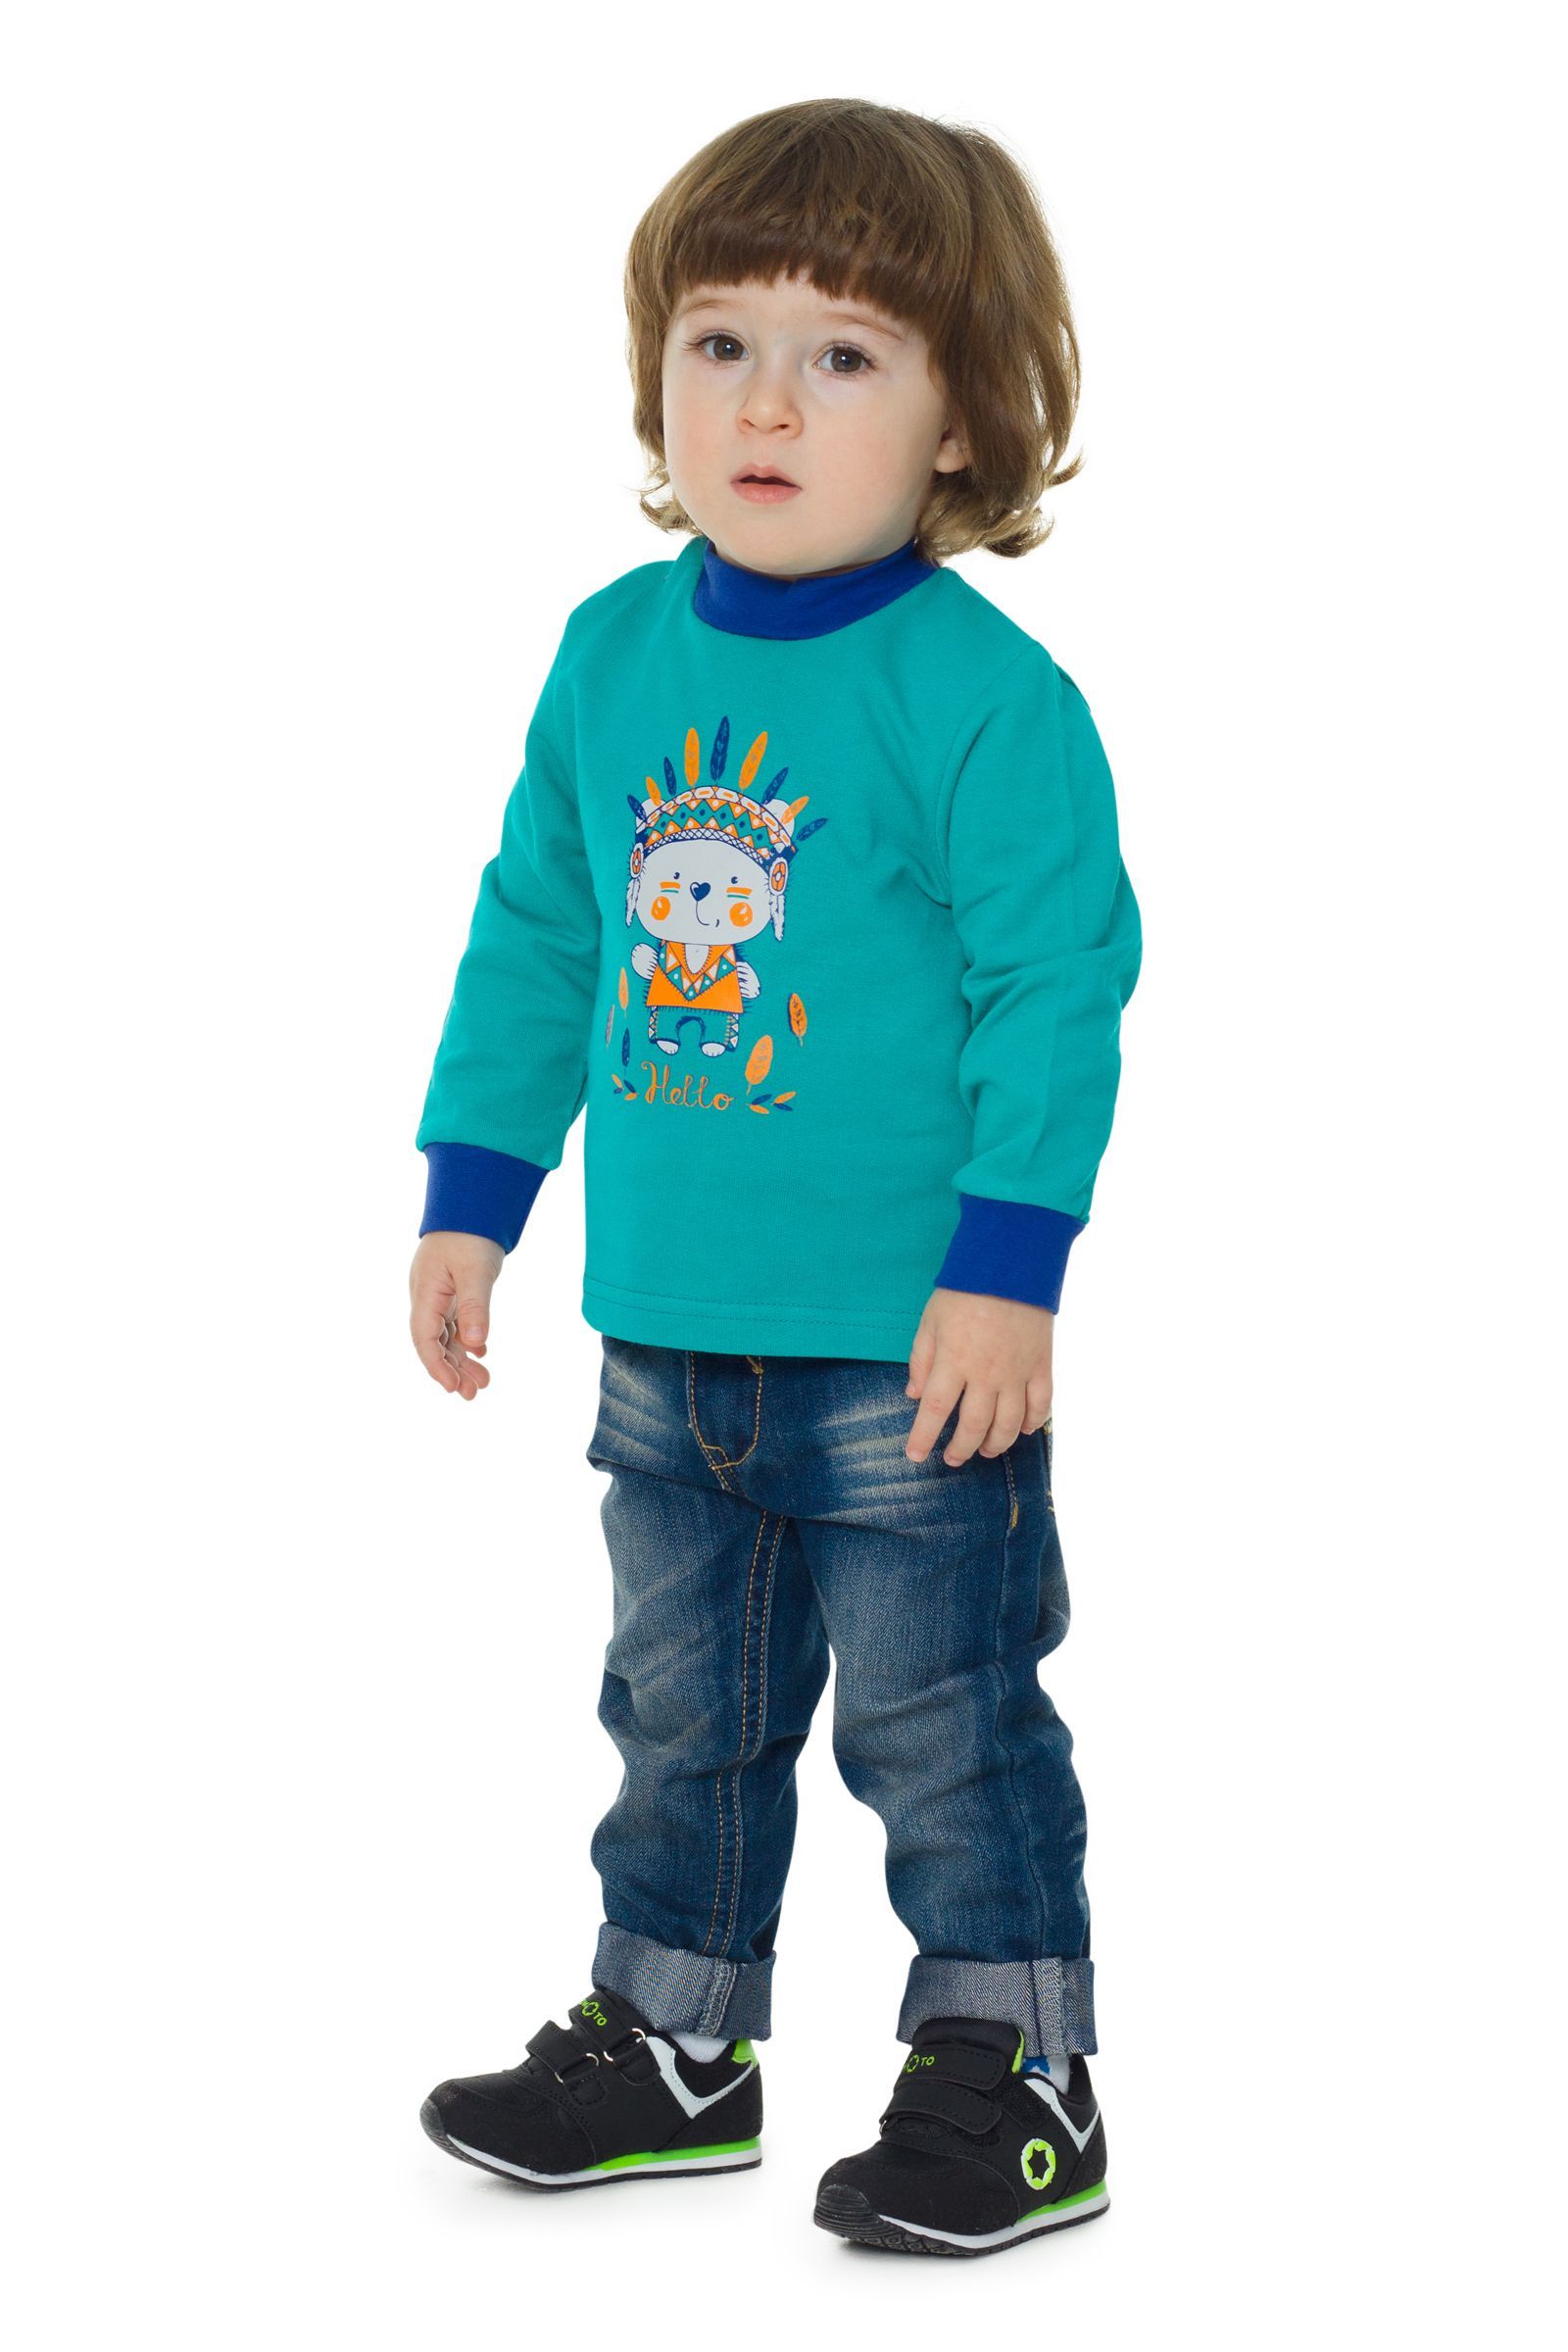 Джемпер-ДЖ05-320ф оптом от производителя детской одежды 'Алёна'